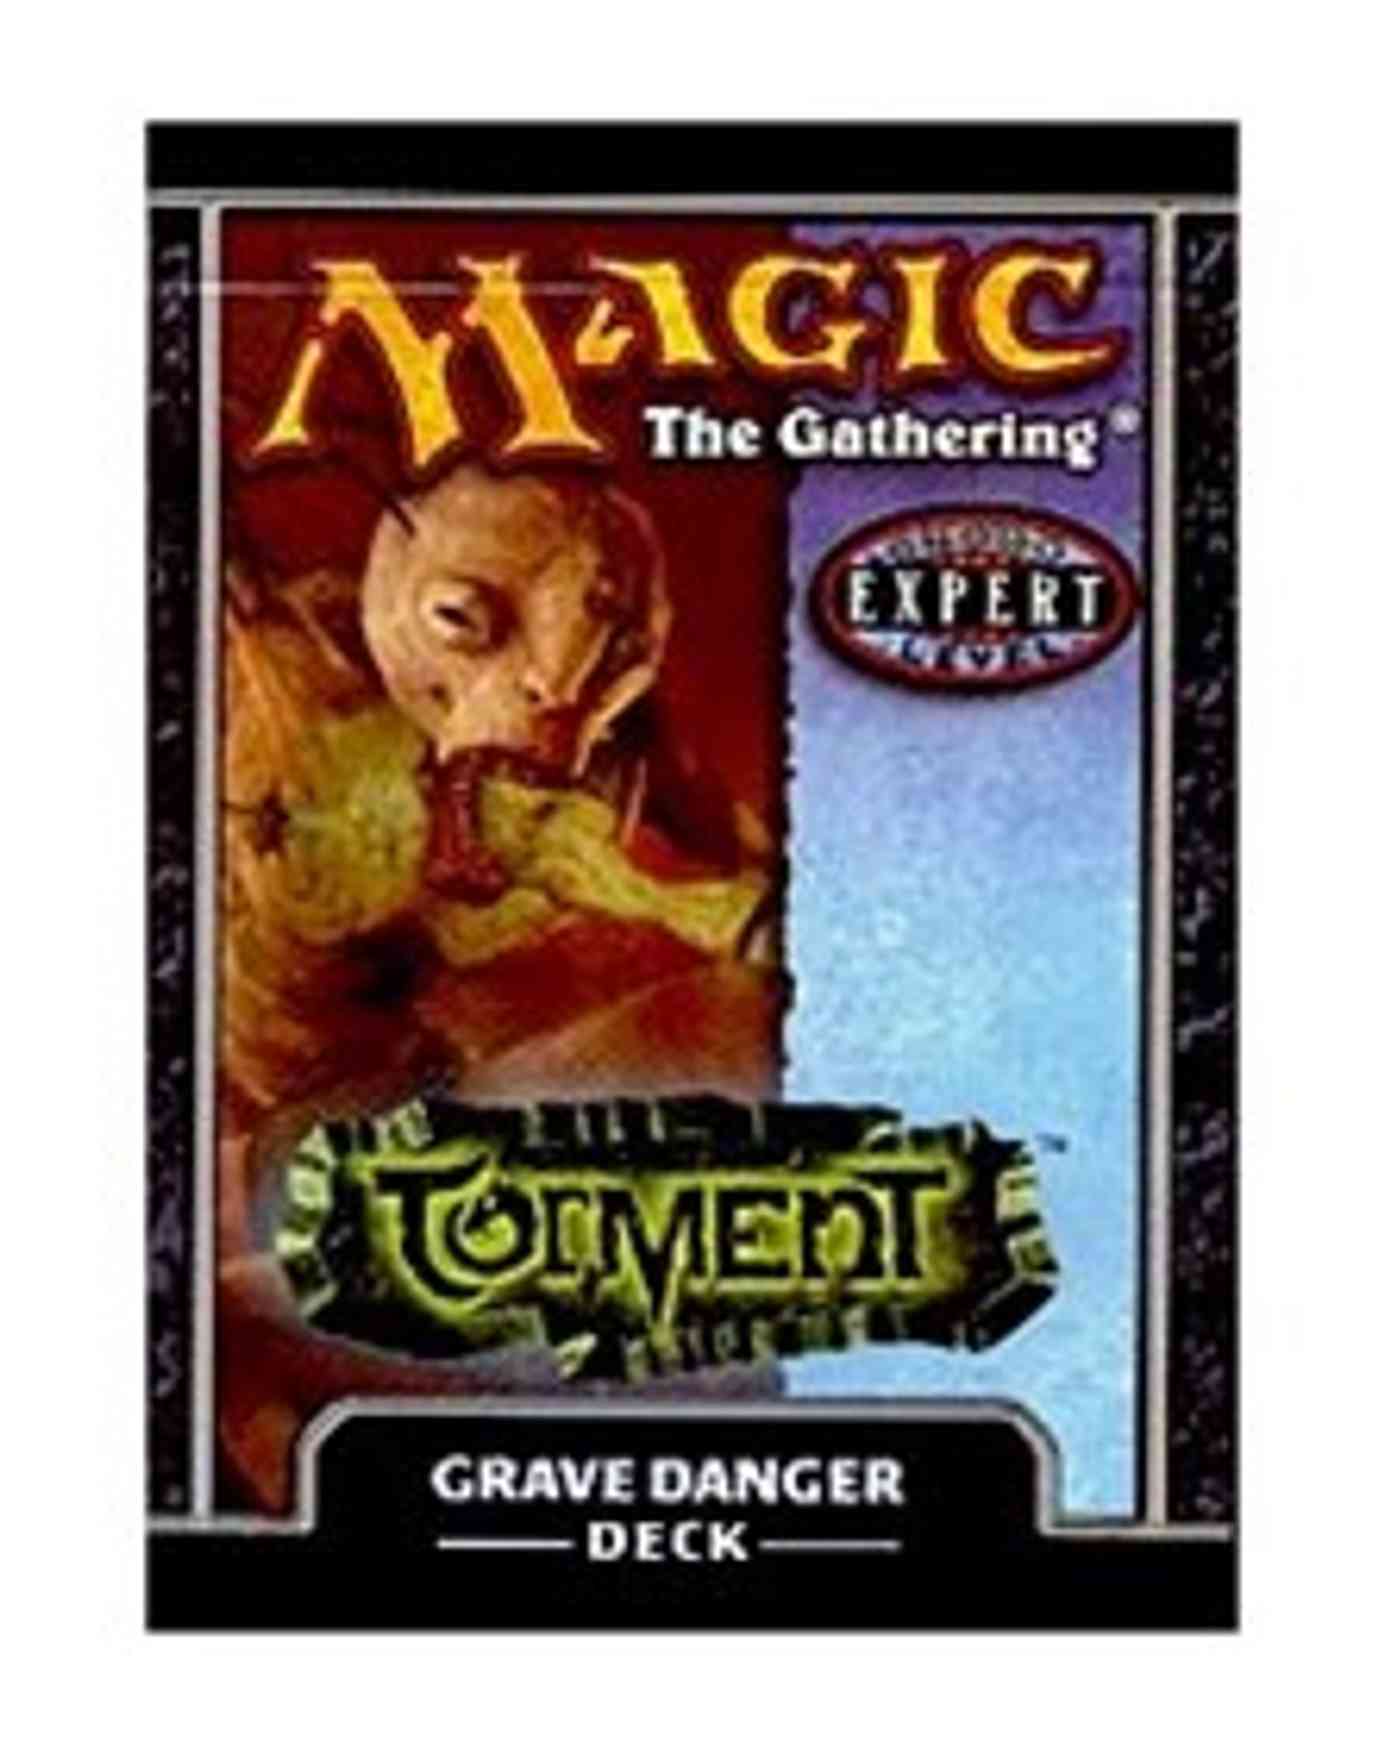 Torment Theme Deck - Grave Danger magic card front